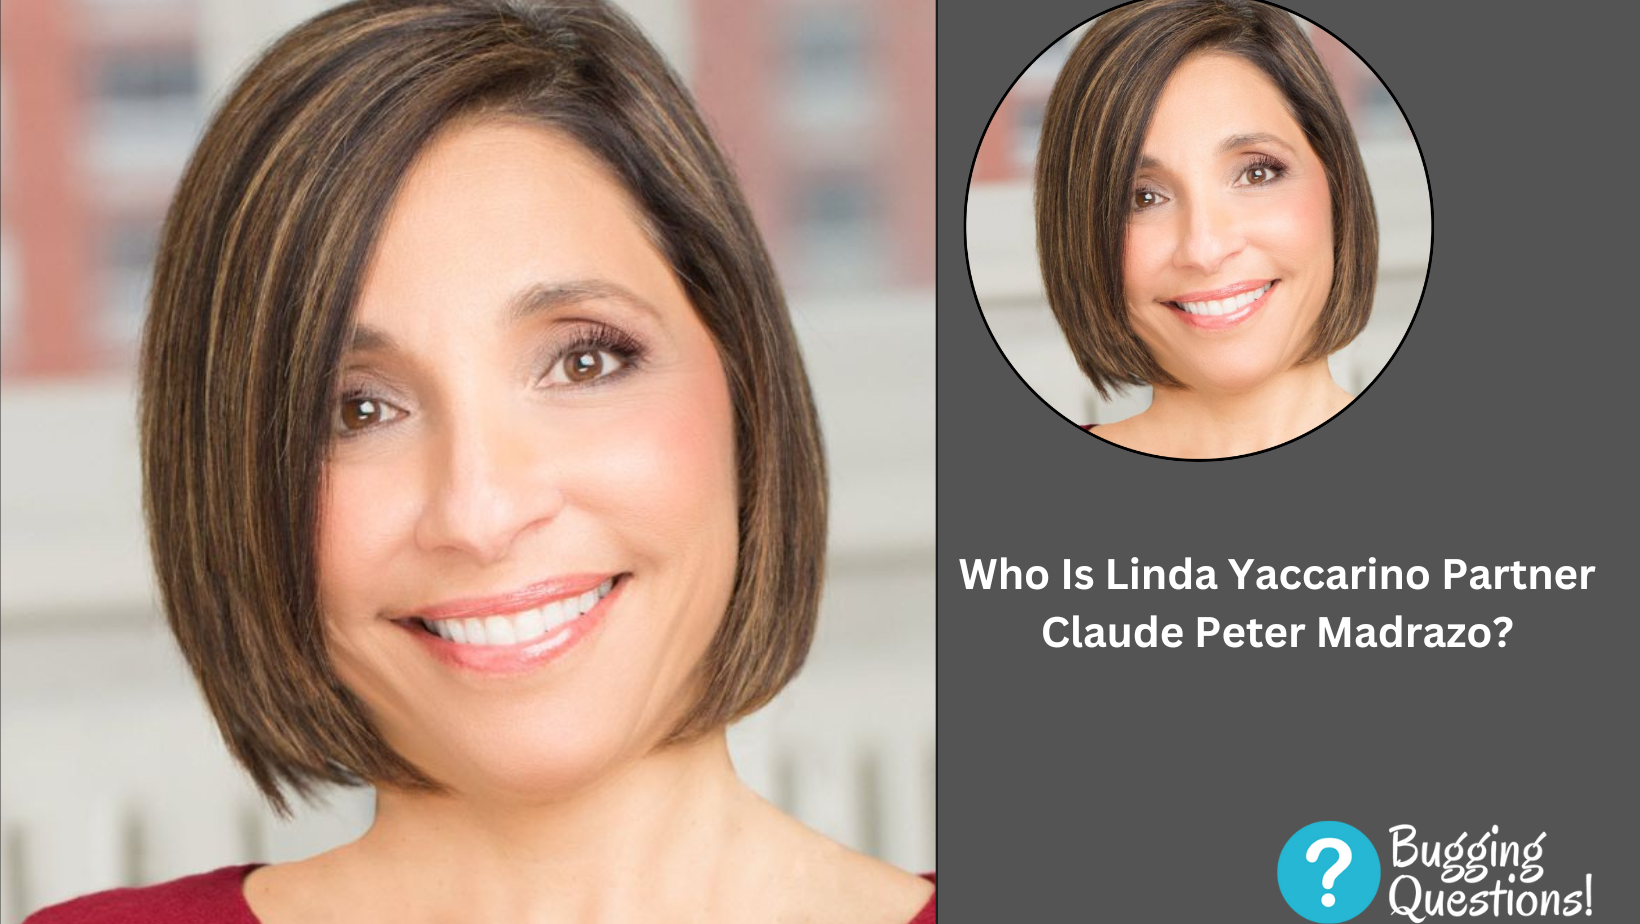 Who Is Linda Yaccarino Partner Claude Peter Madrazo?